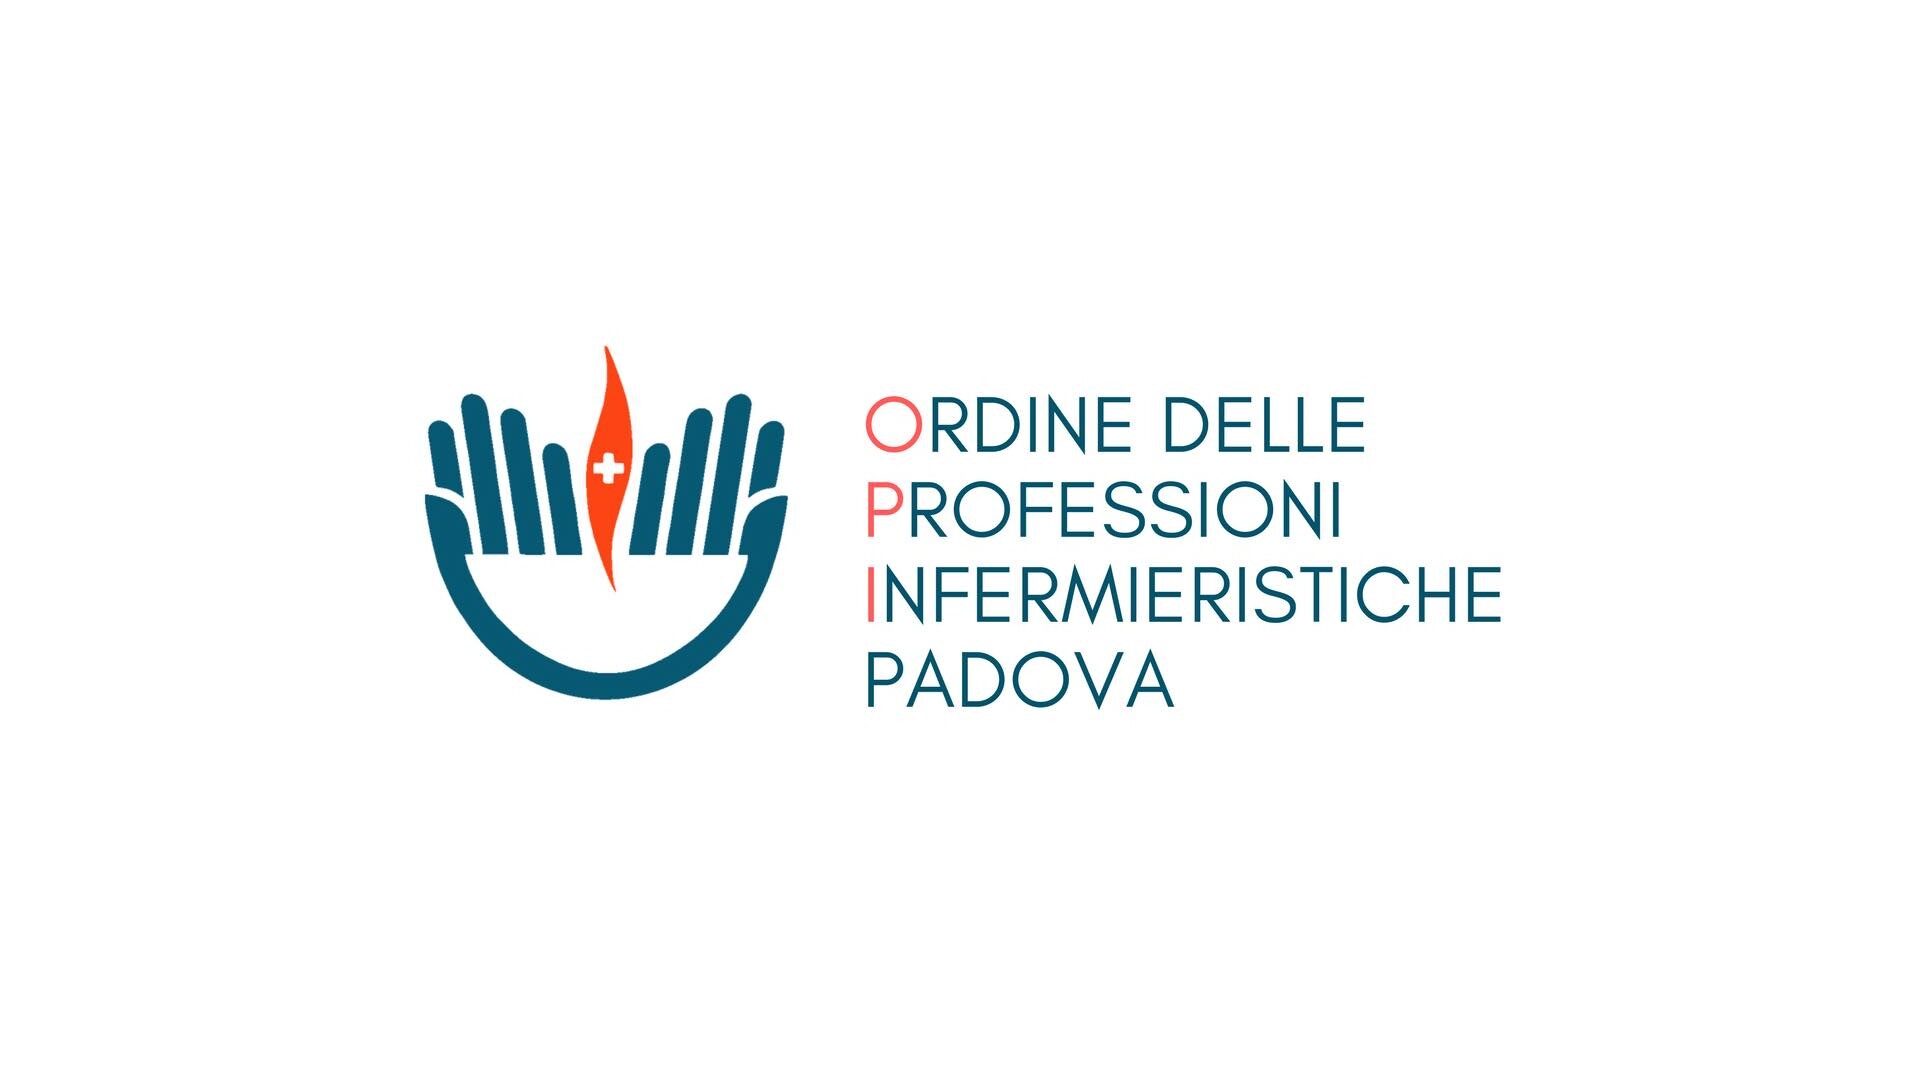 Ordine delle Professioni Infermieristiche di Padova